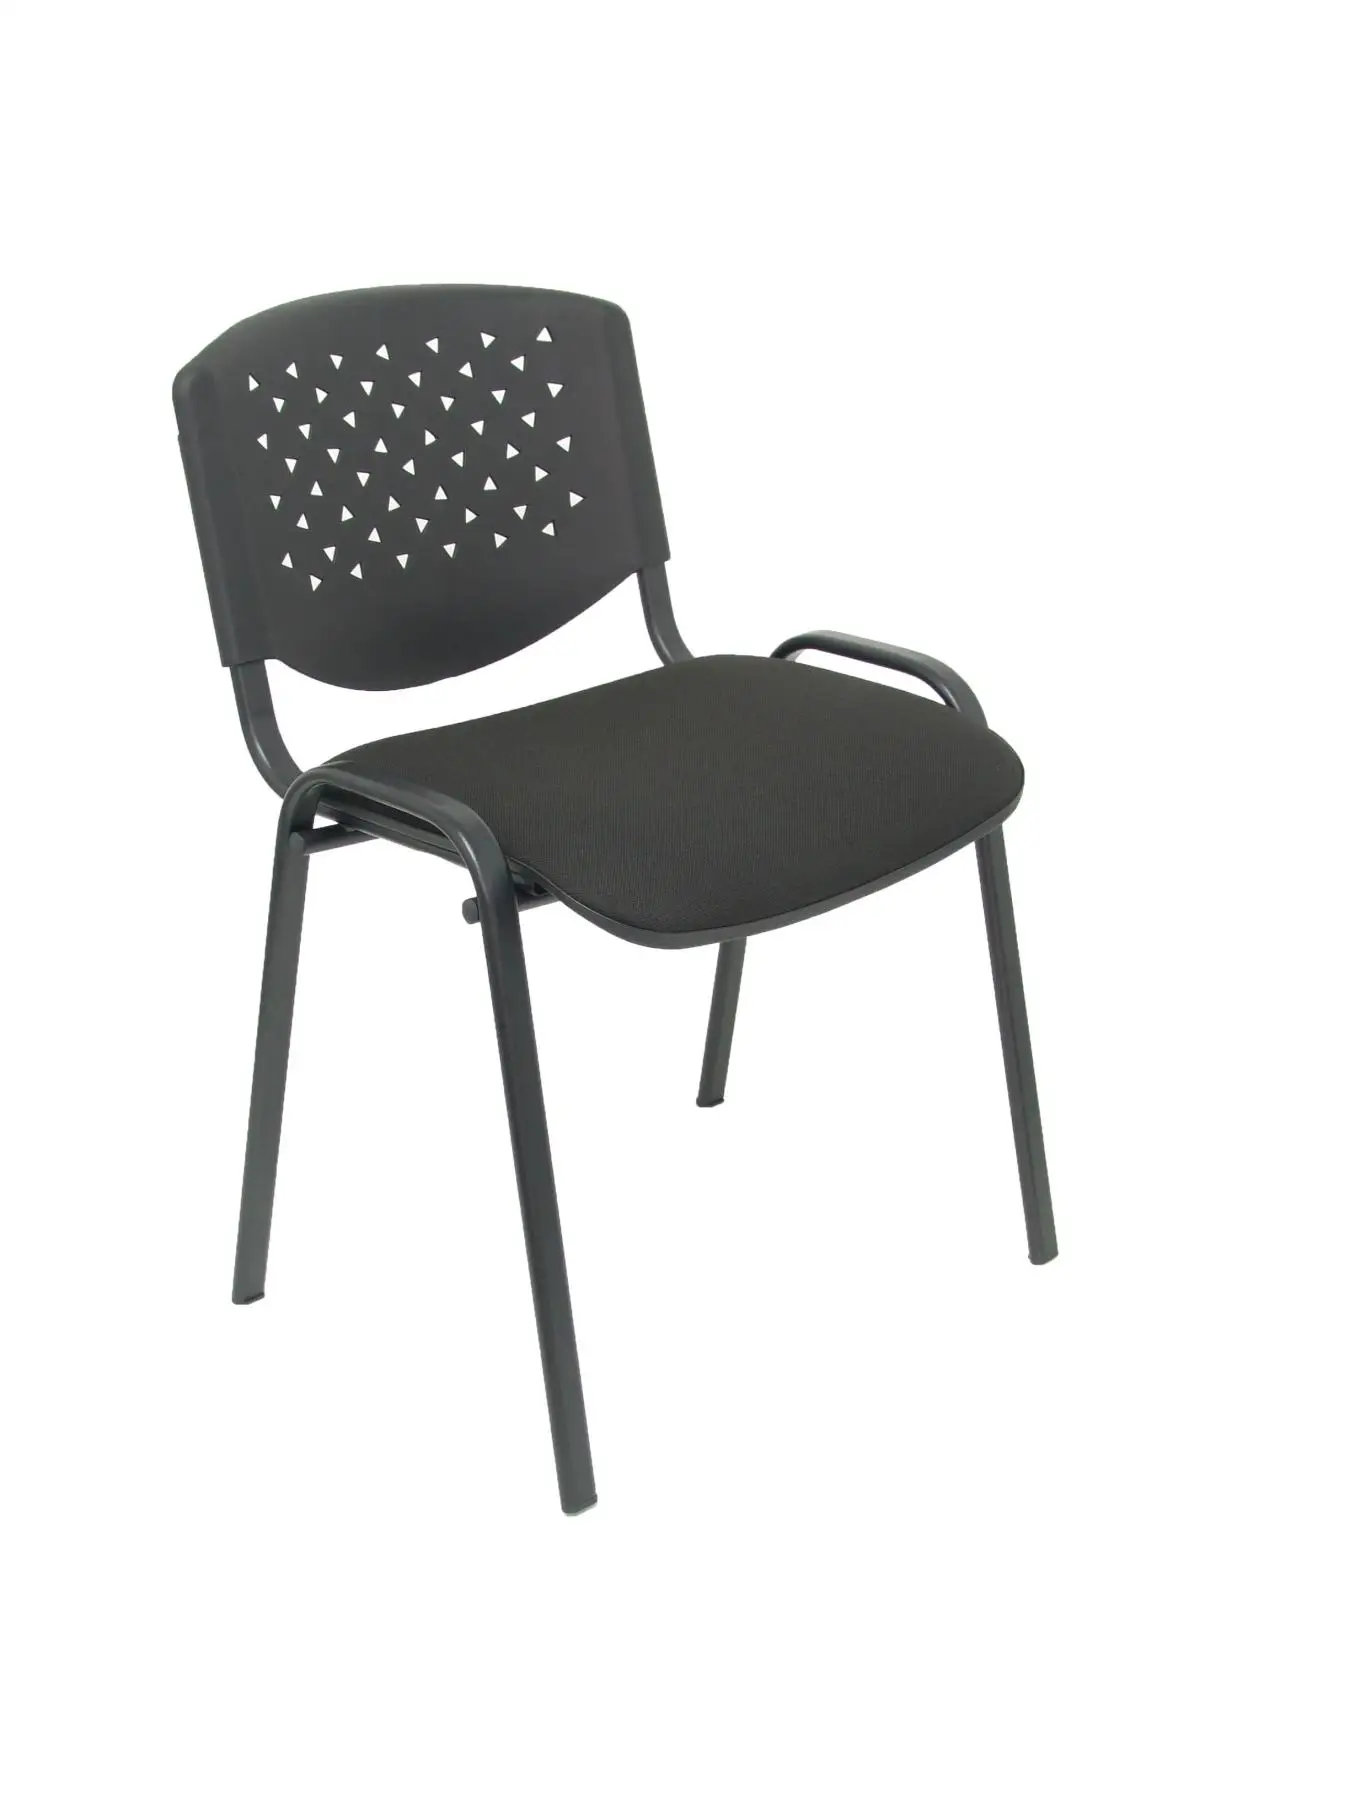 Набор из 4 стульев для гостей эргономичный, Штабелируемый, многоцелевой и структурный цвет черный respaldo ПВХ черный цвет и Аси